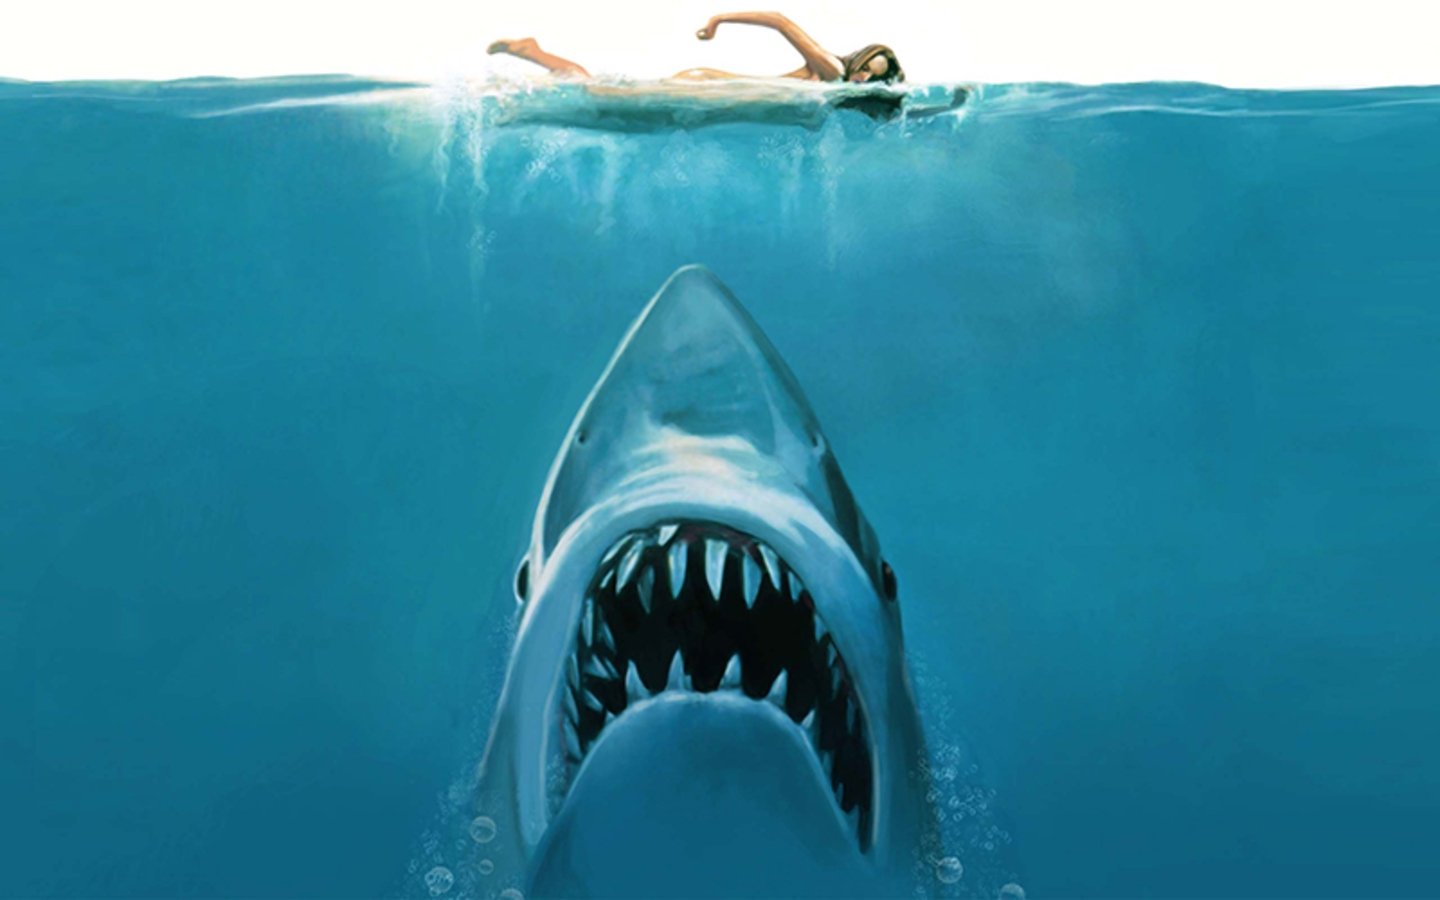 mitos-y-realidades-sobre-los-tiburones-por-que-no-hay-que-tenerles-miedo-pelicula.jpg